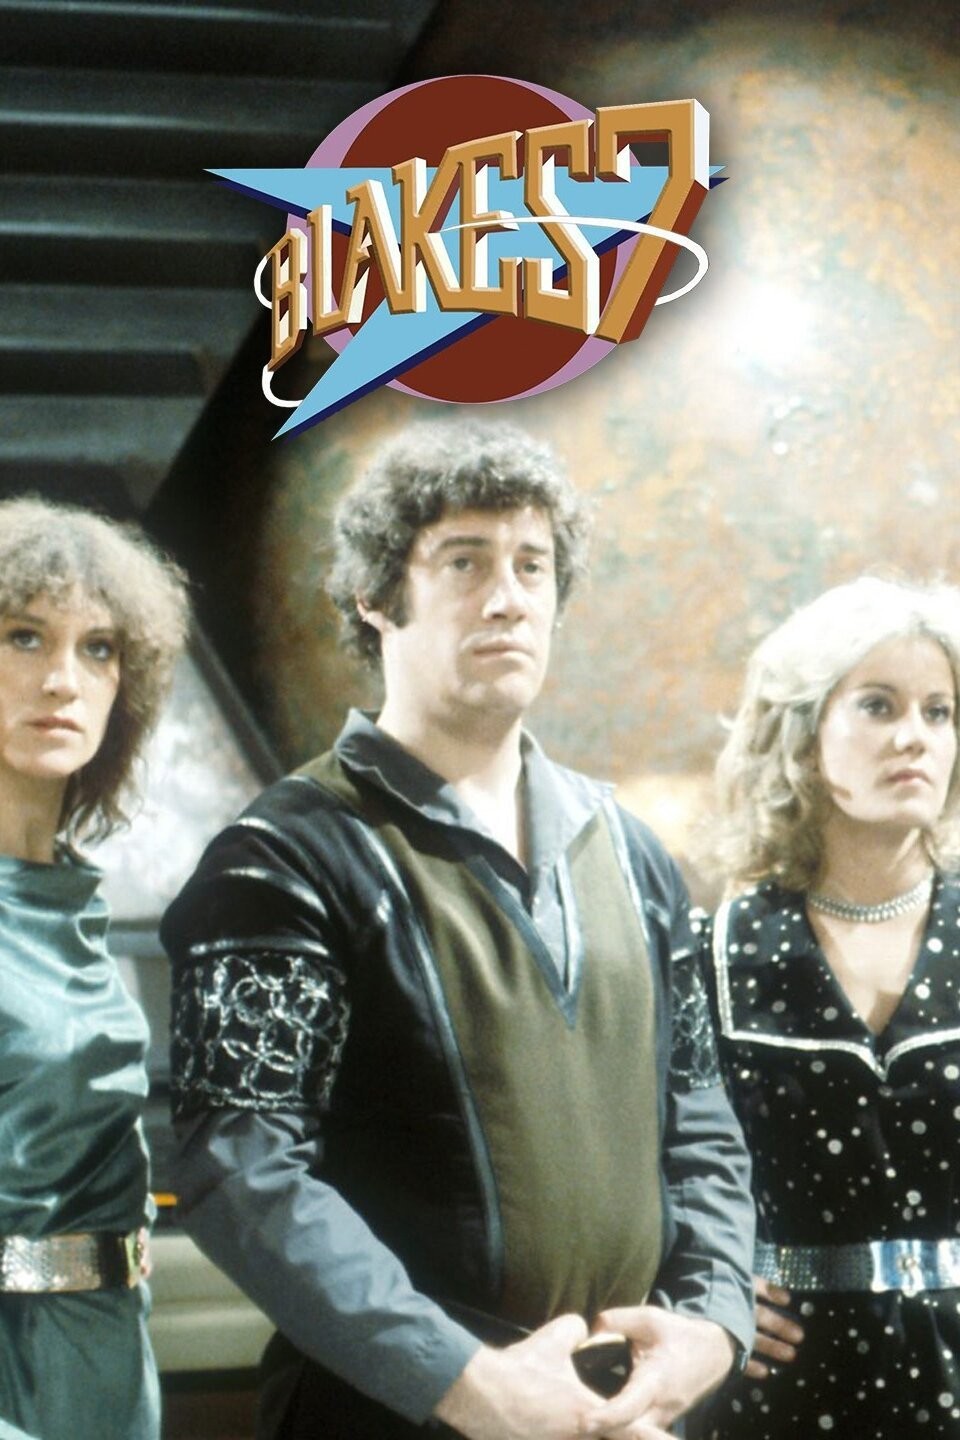 Blake's 7 (TV Series 1978–1981) - IMDb